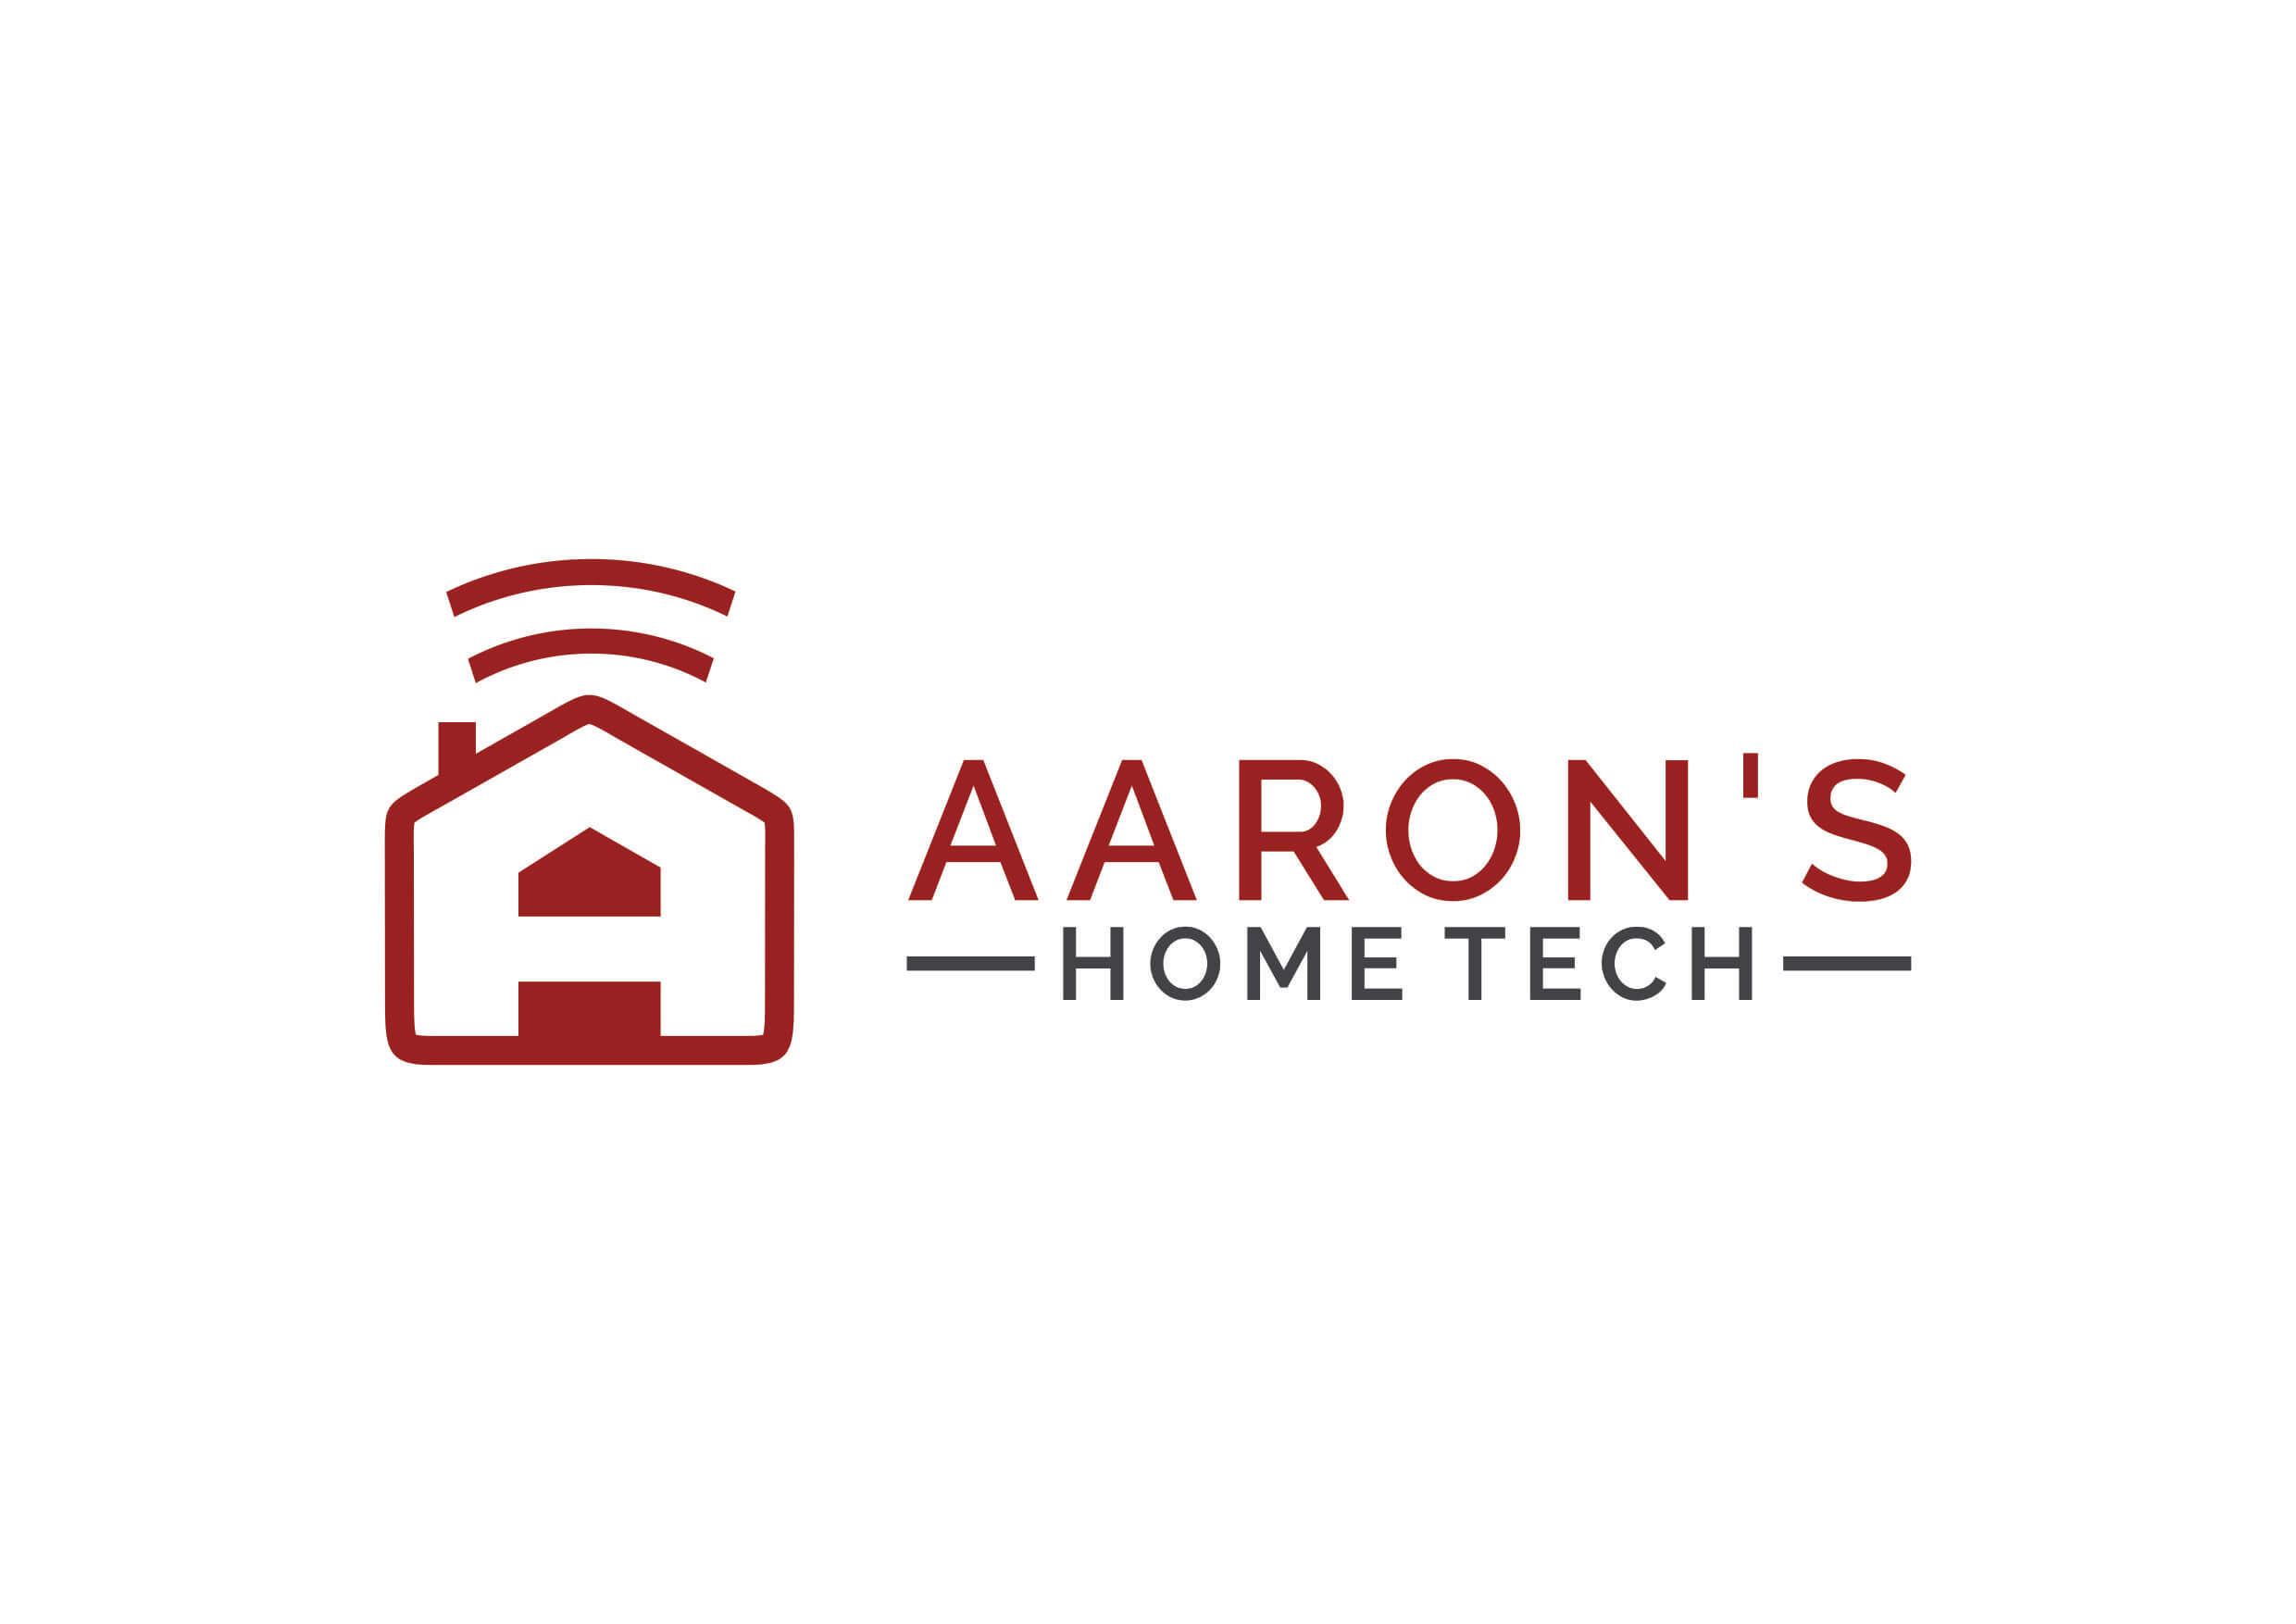 Aaron's Home Tech 